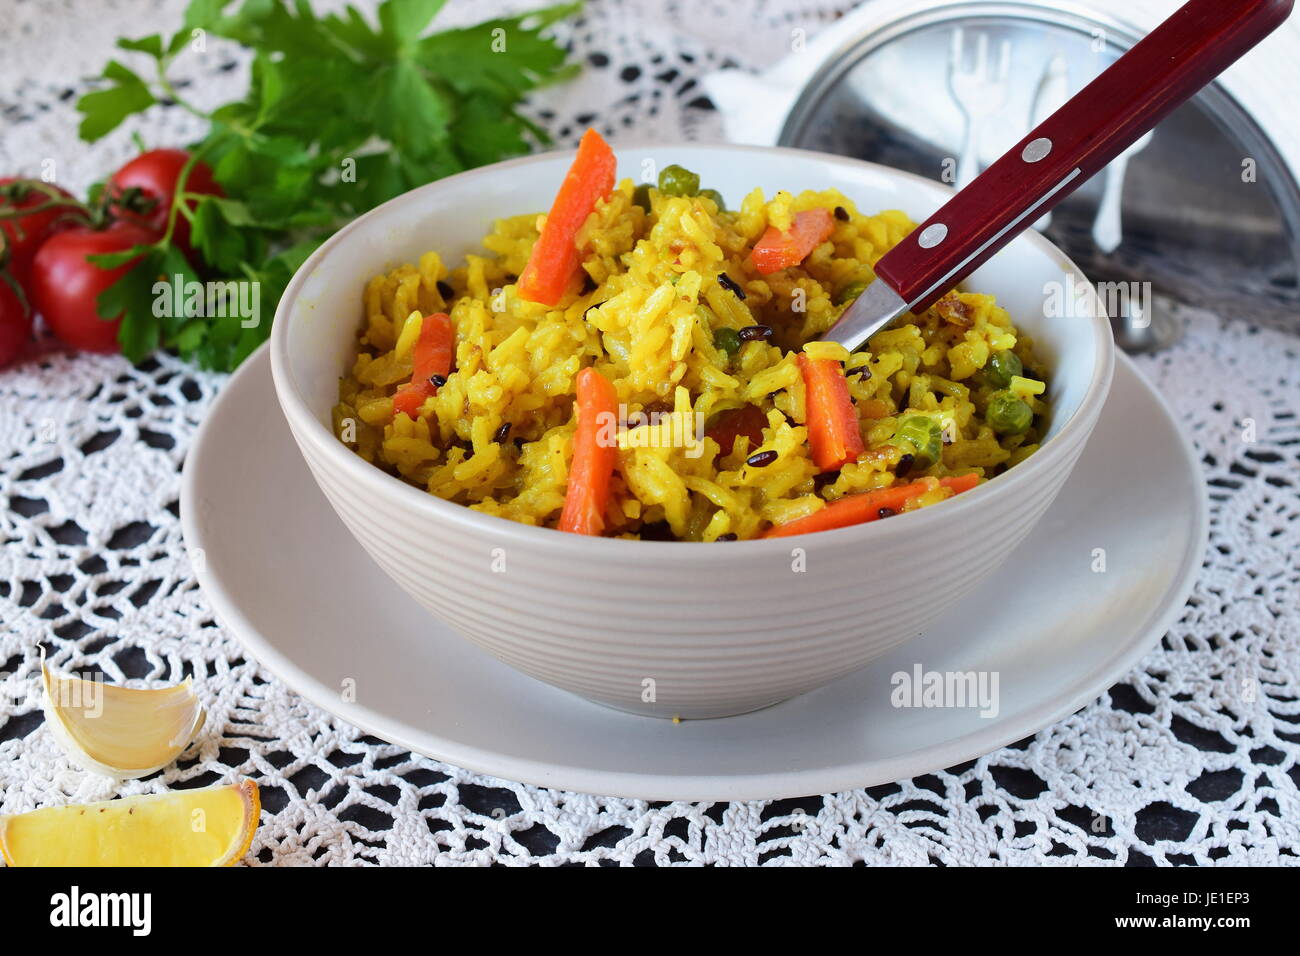 Facile à cuire avec le riz, les carottes, les oignons raisans et l'huile d'olive dans un bol sur un fond blanc. Concept de saine alimentation Banque D'Images